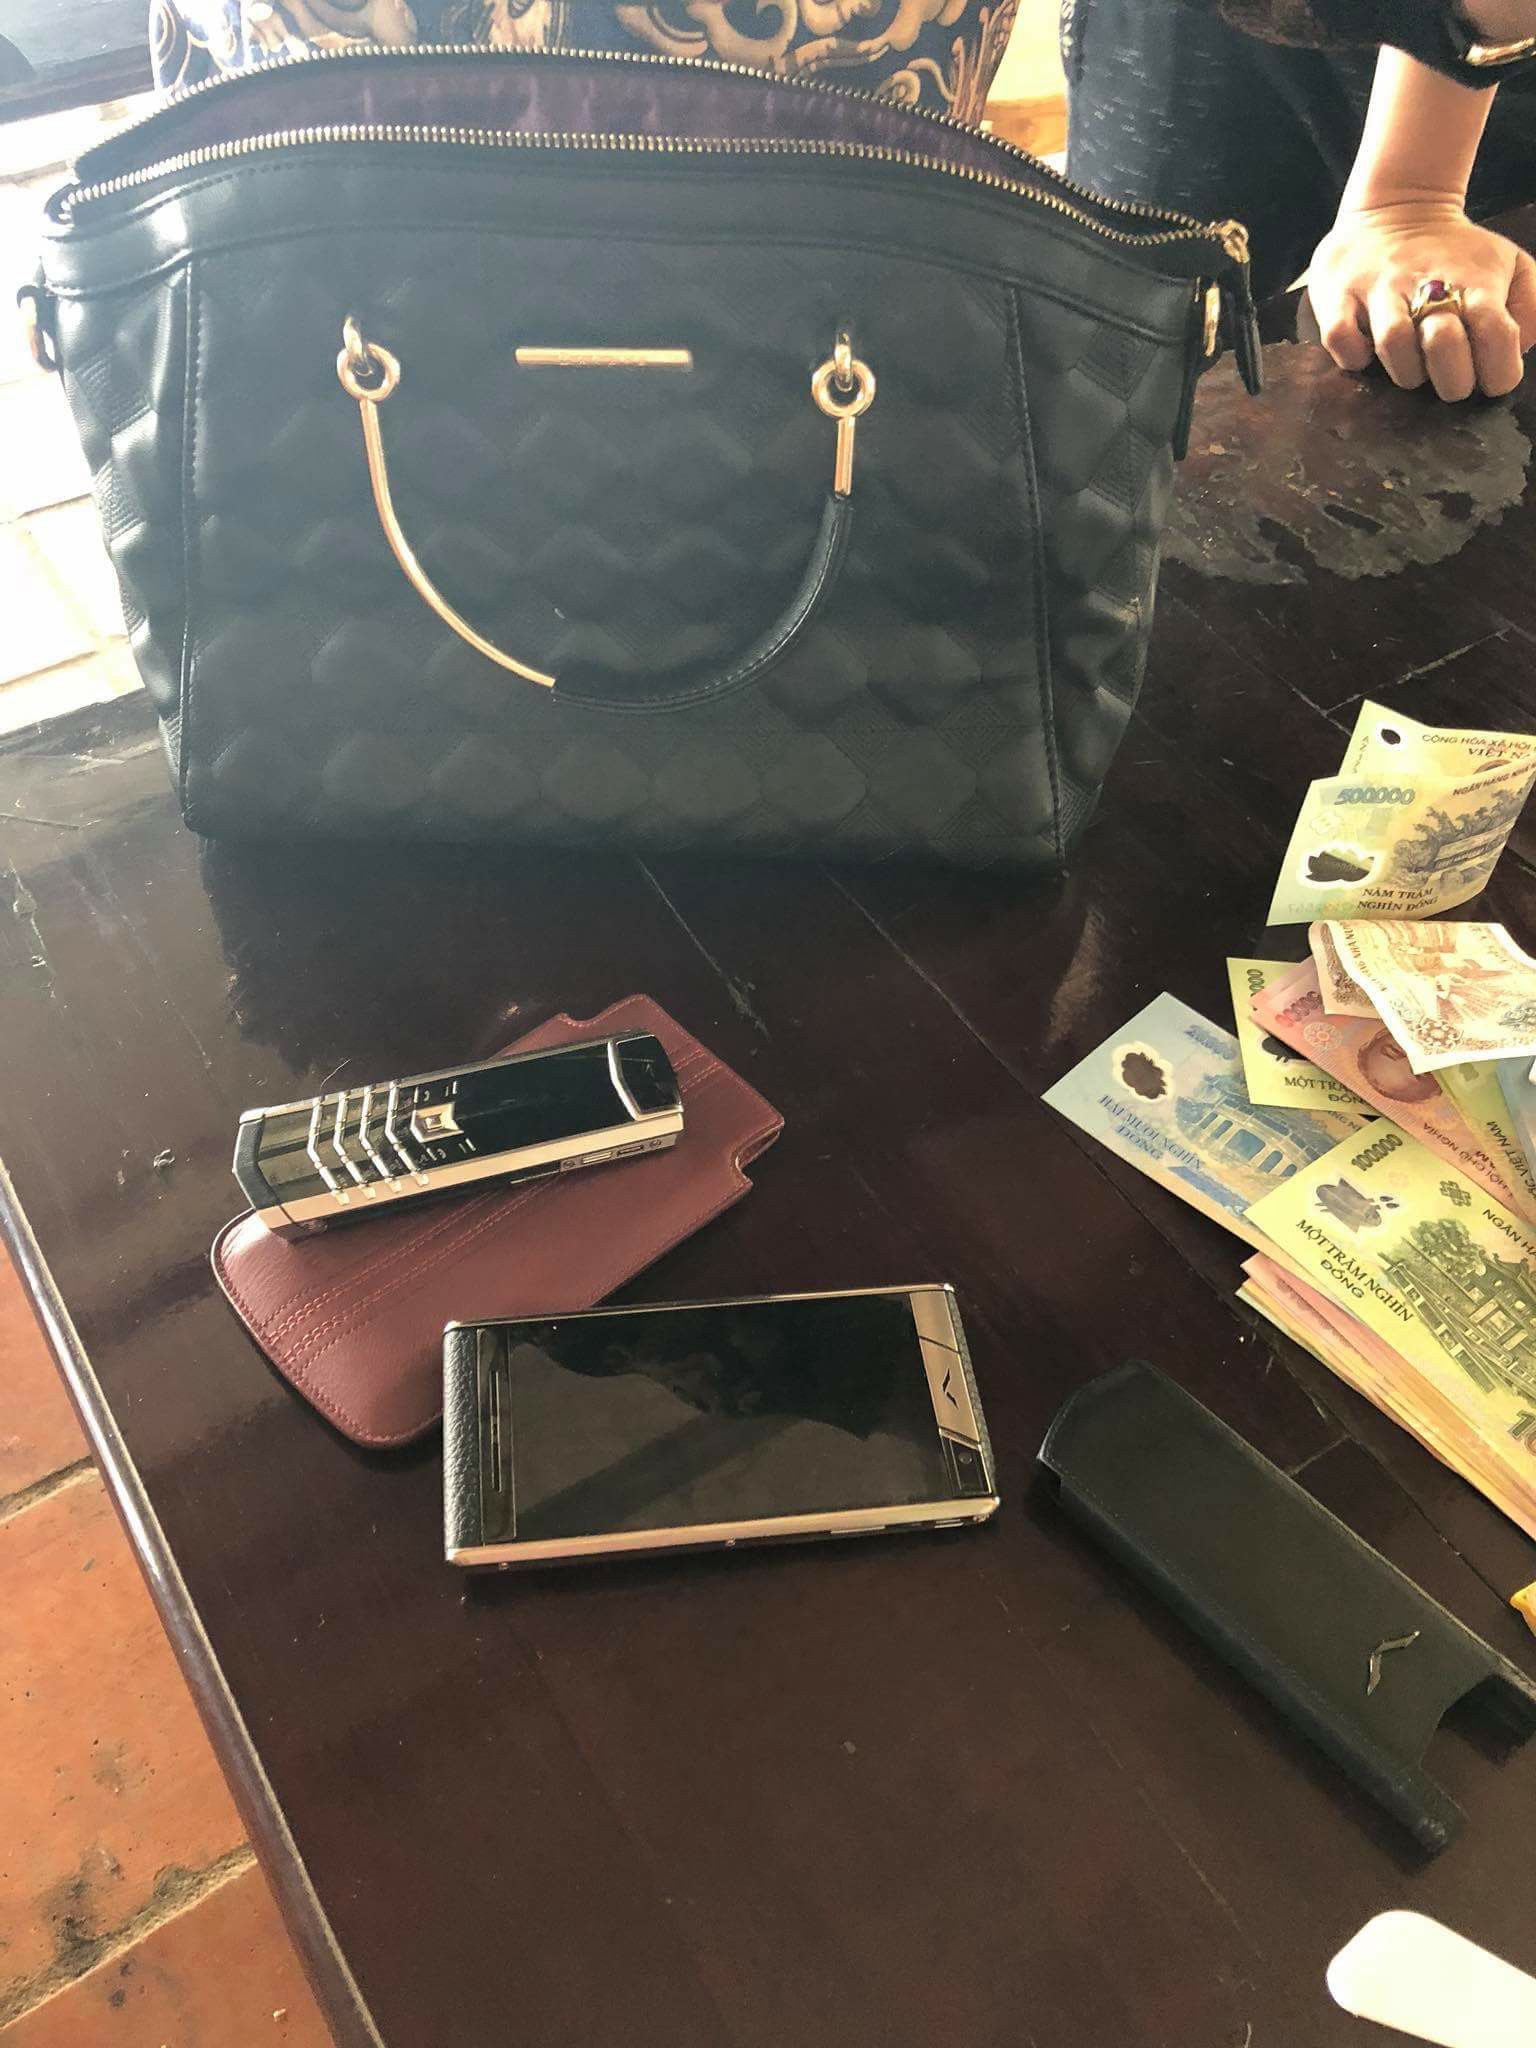 Cô gái trẻ tìm kiếm vị khách bỏ quên túi xách chứa 2 chiếc Vertu cùng gần 50 triệu đồng tiền mặt tại quán ăn - Ảnh 2.